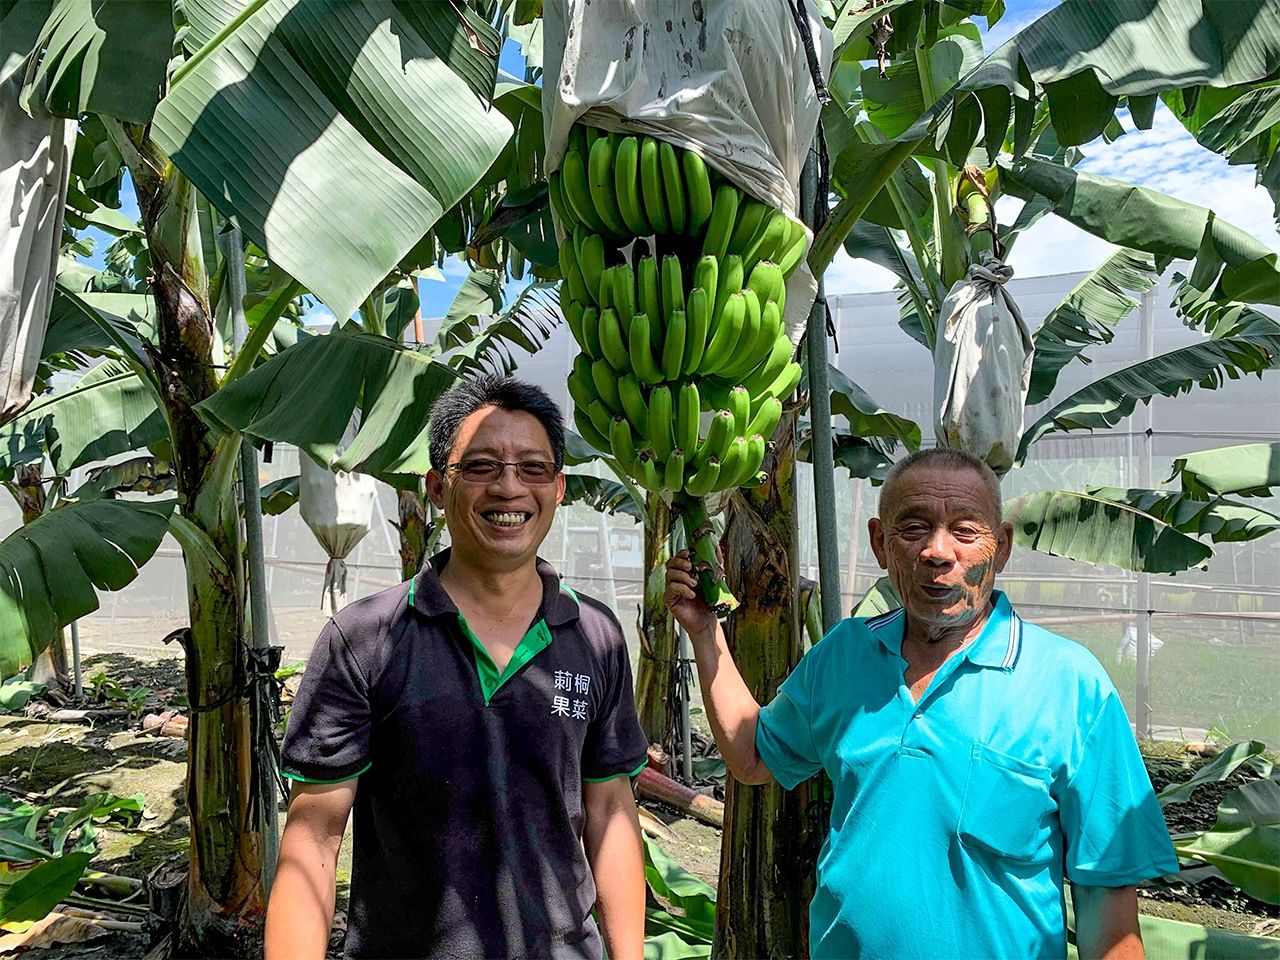 烏龍種バナナの生産農家の蘇明利（右）と息子の蘇竣奕（左）（内田直毅氏撮影）